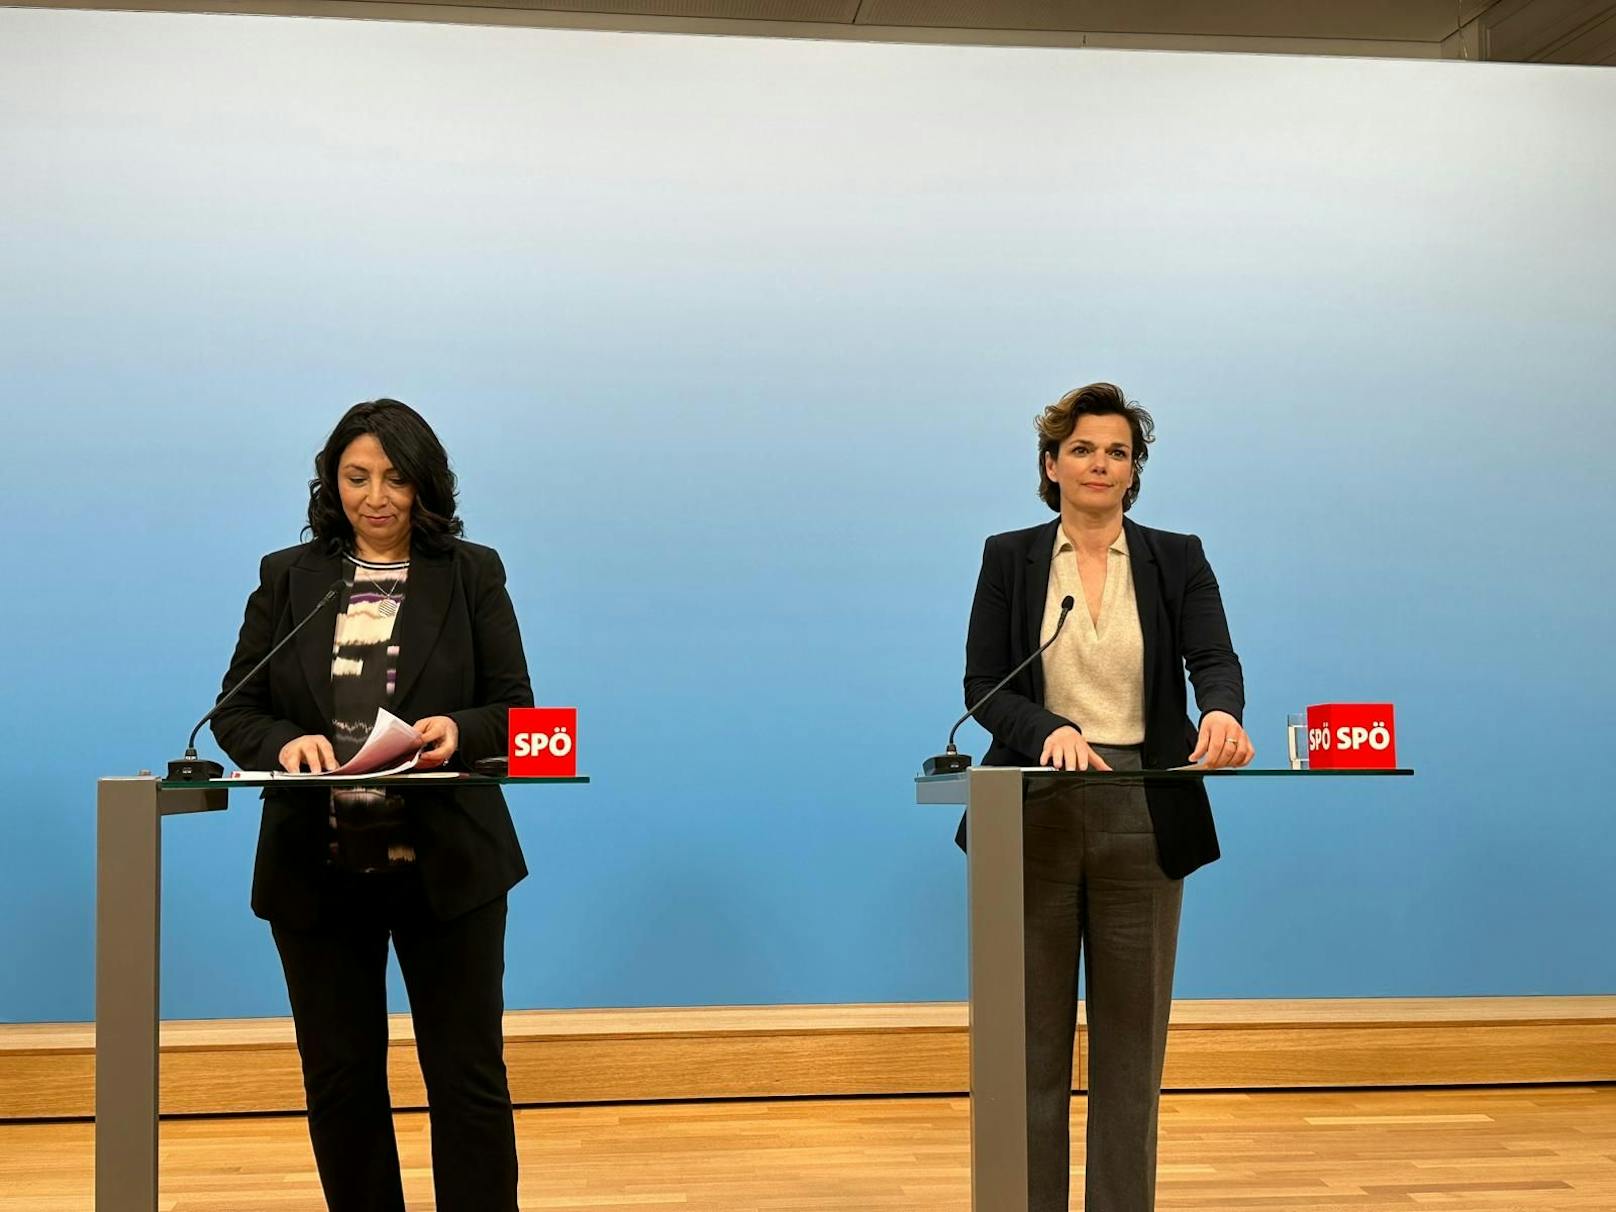 Eklat und neue Eskalation bei SPÖ-Showdown im Parlament